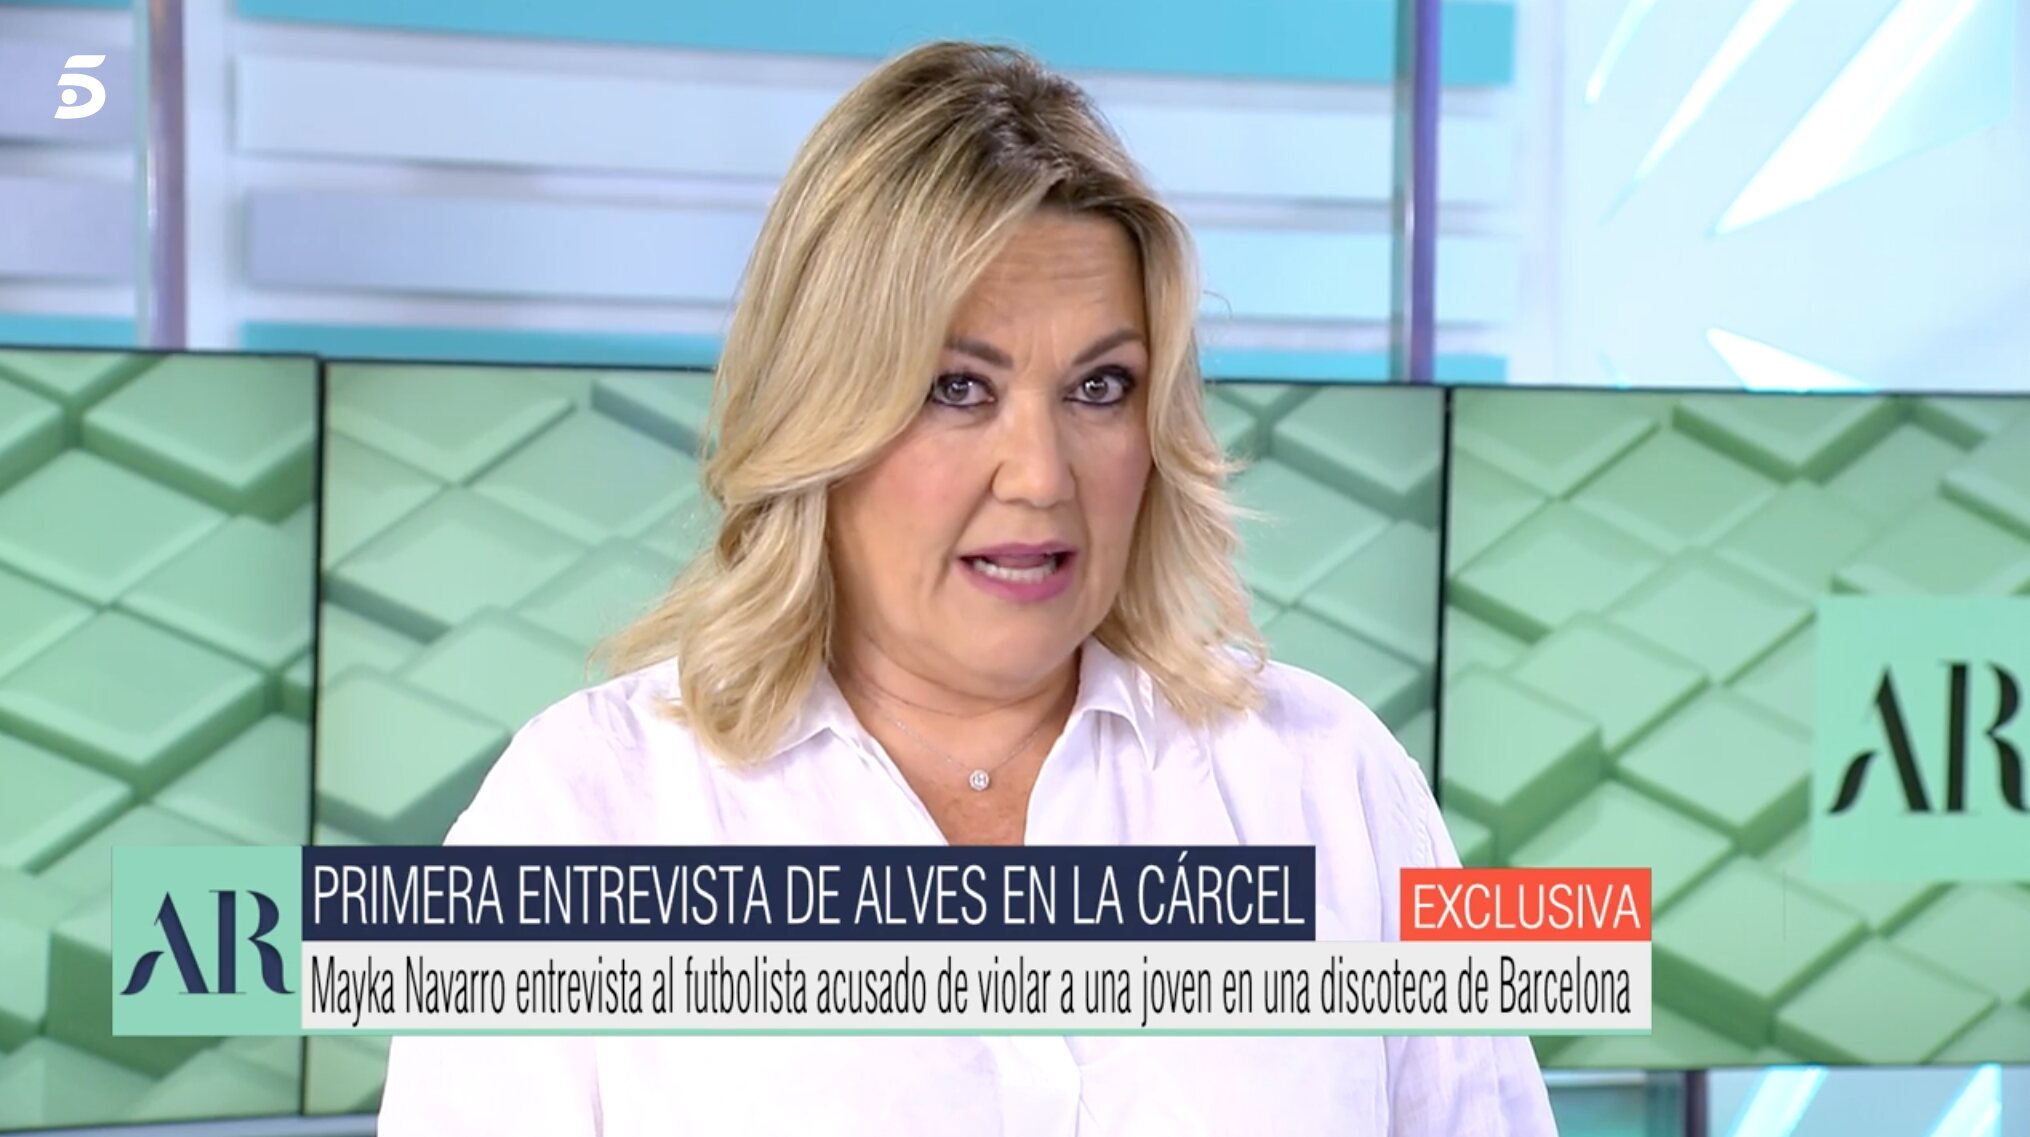 Mayka Navarro ha entrevistado a Alves en prisión | Foto: Telecinco.es